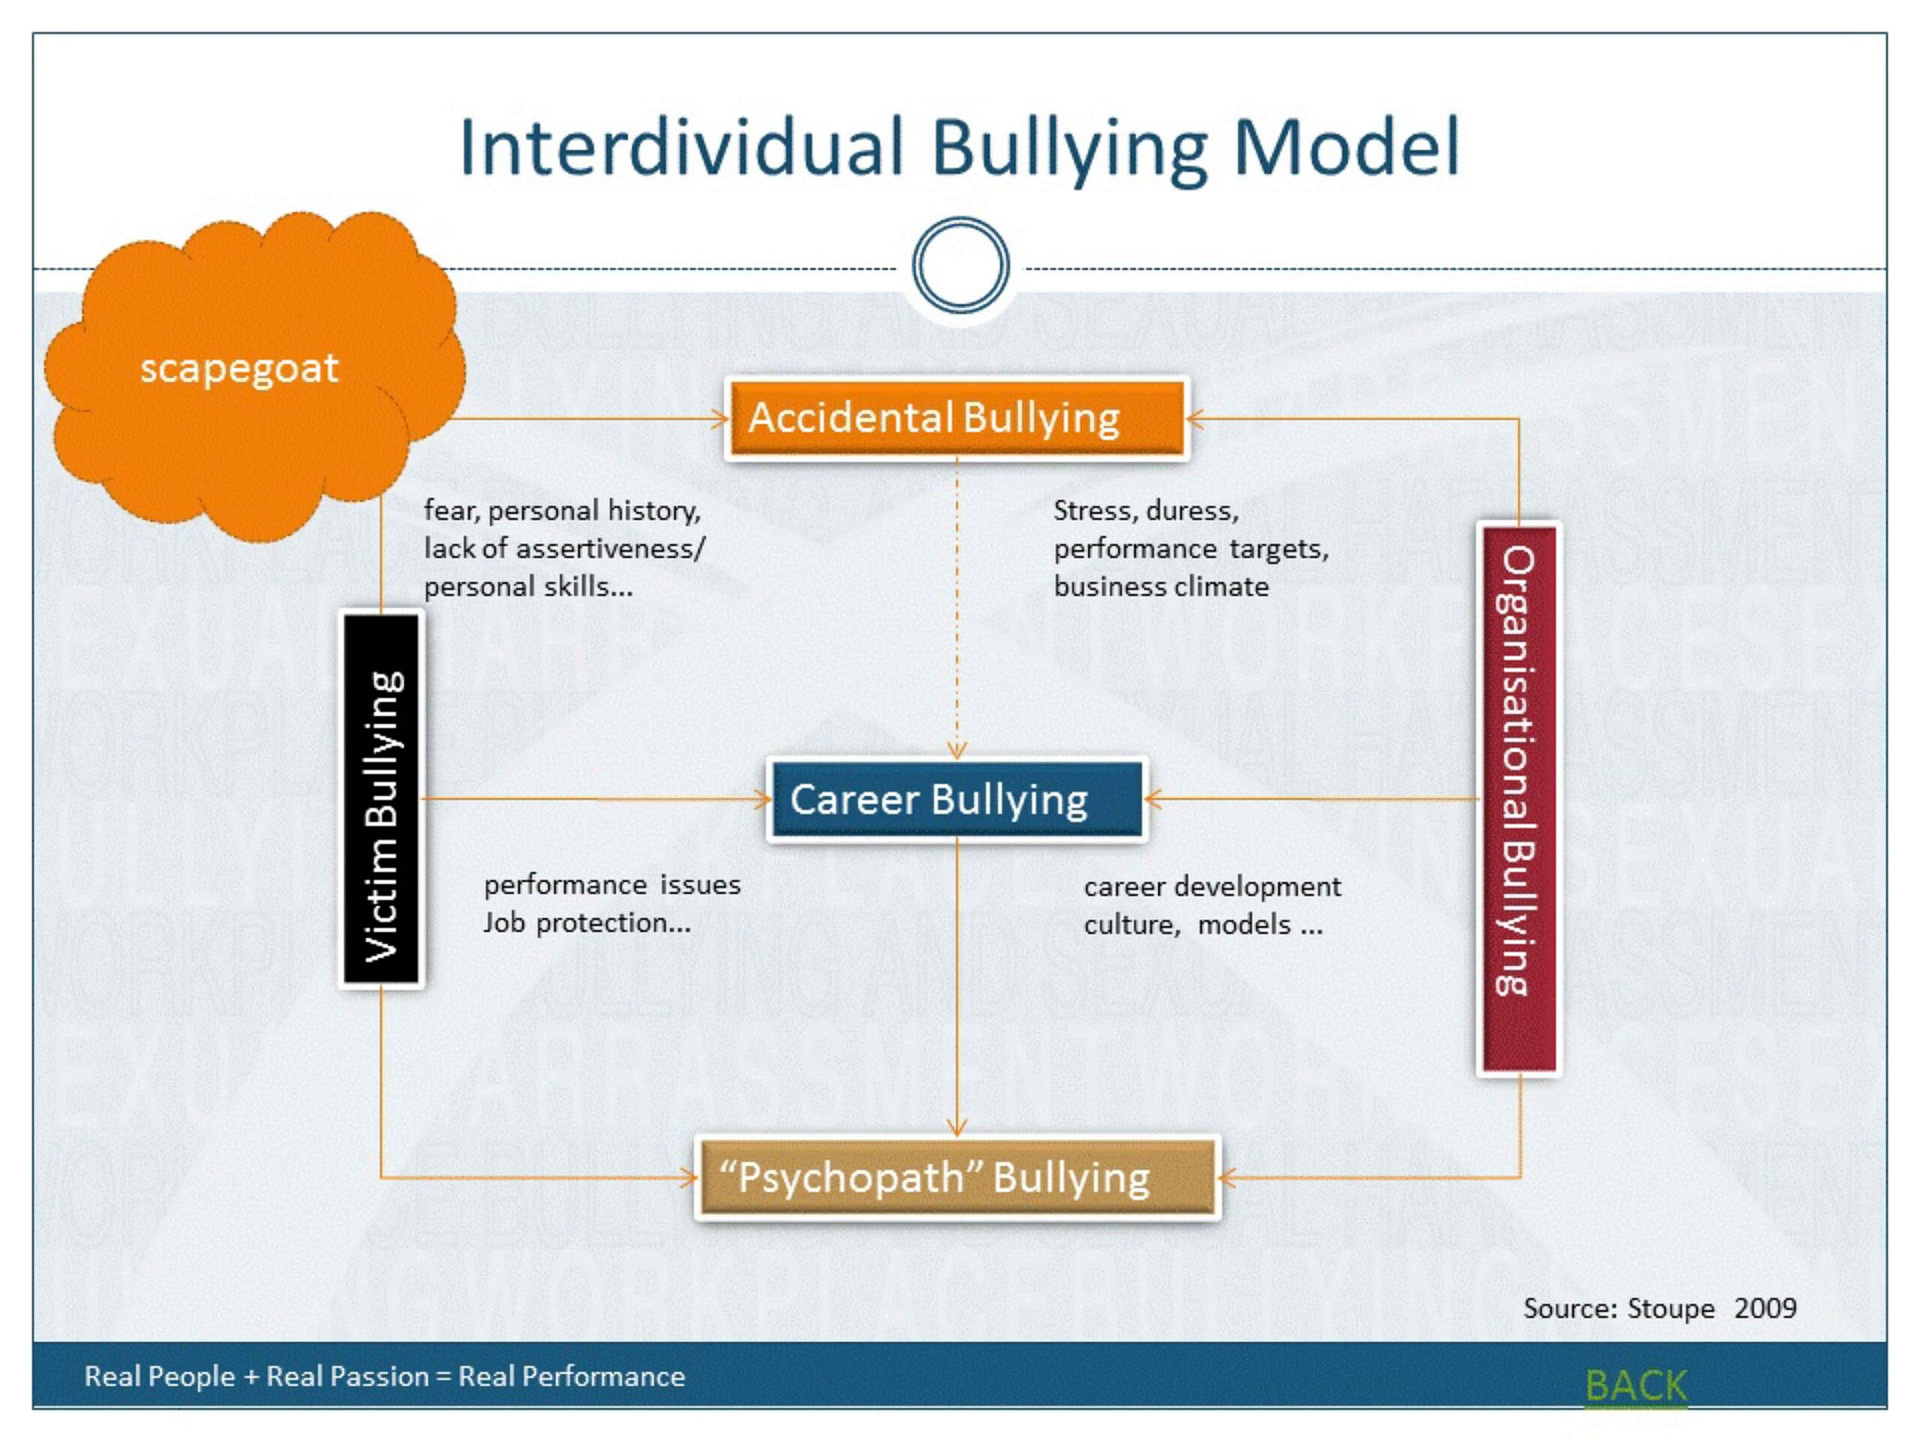 interdividual bullying model